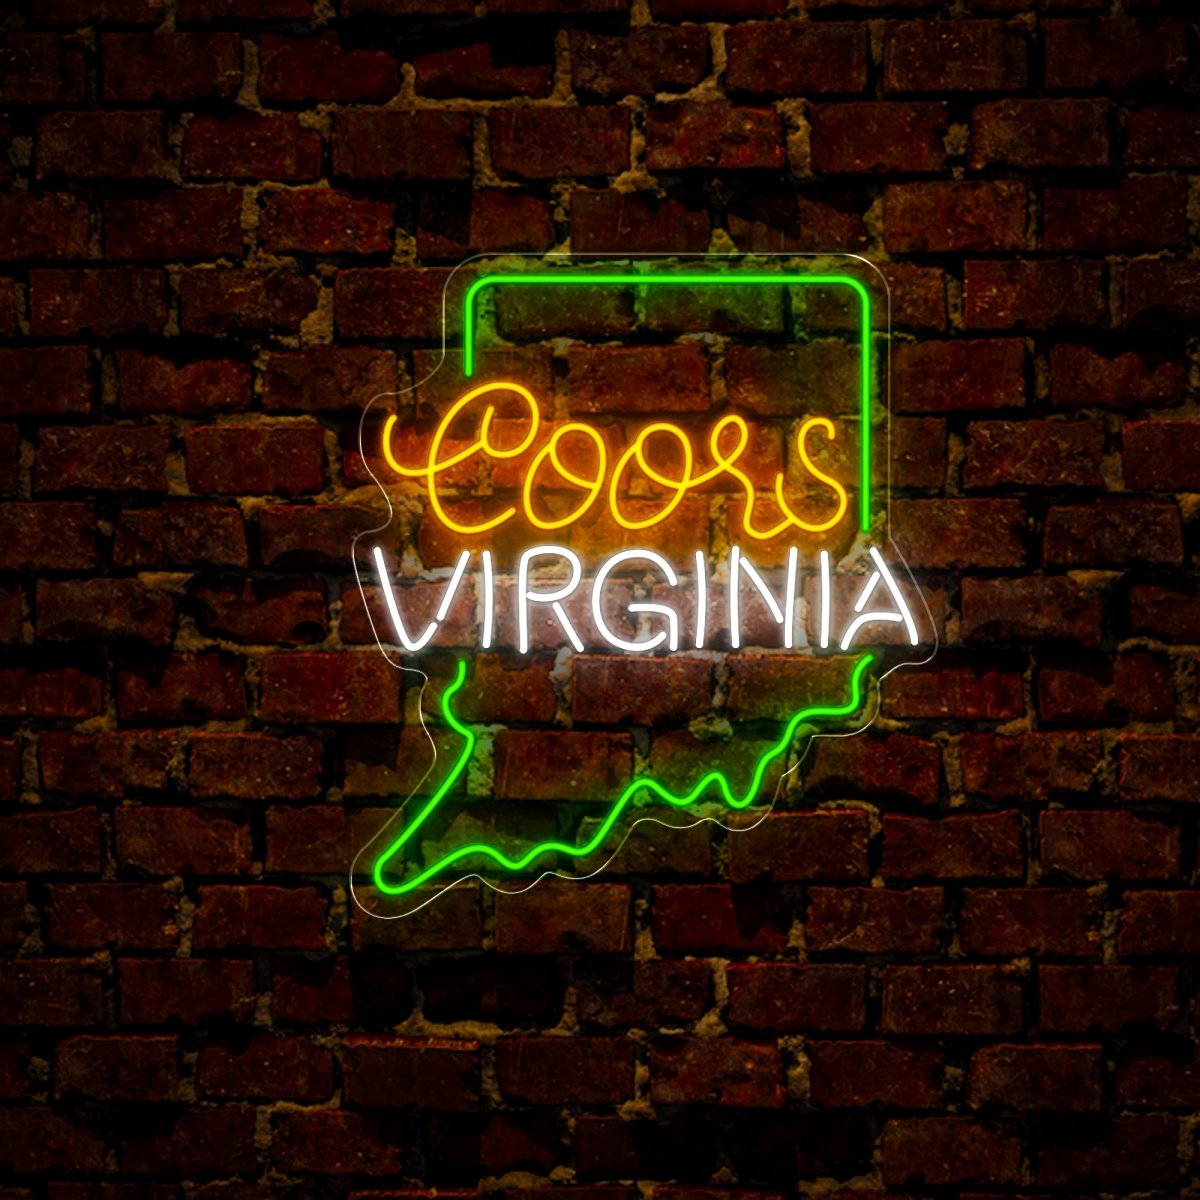 Coors American Virginia Maps Neon Sign - Reels Custom